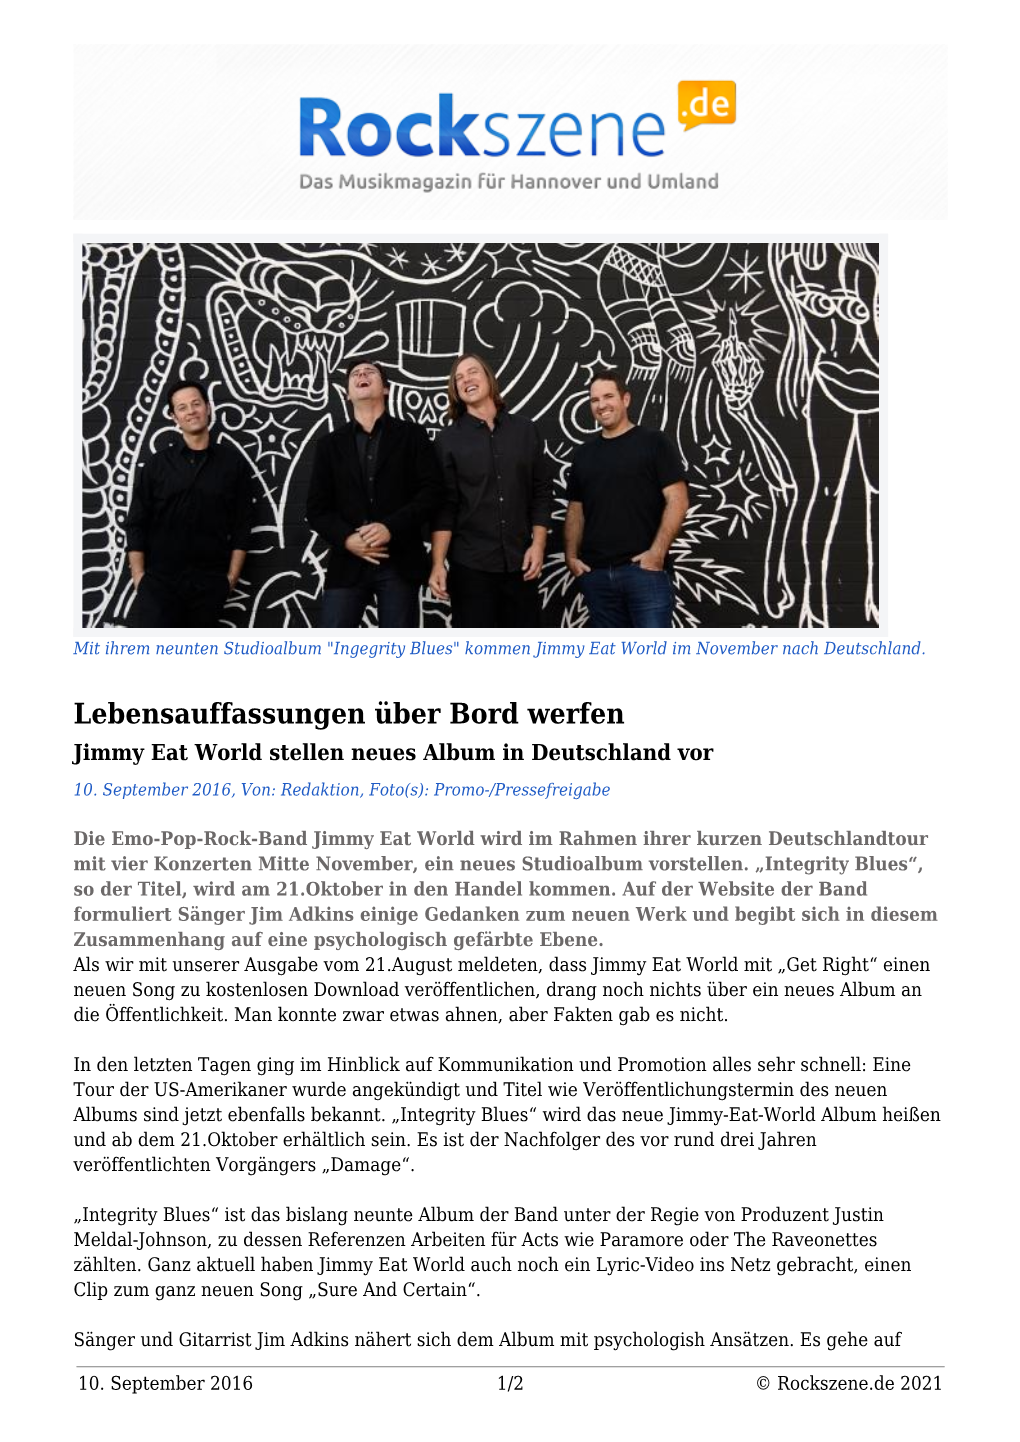 Jimmy Eat World Stellen Neues Album in Deutschland Vor